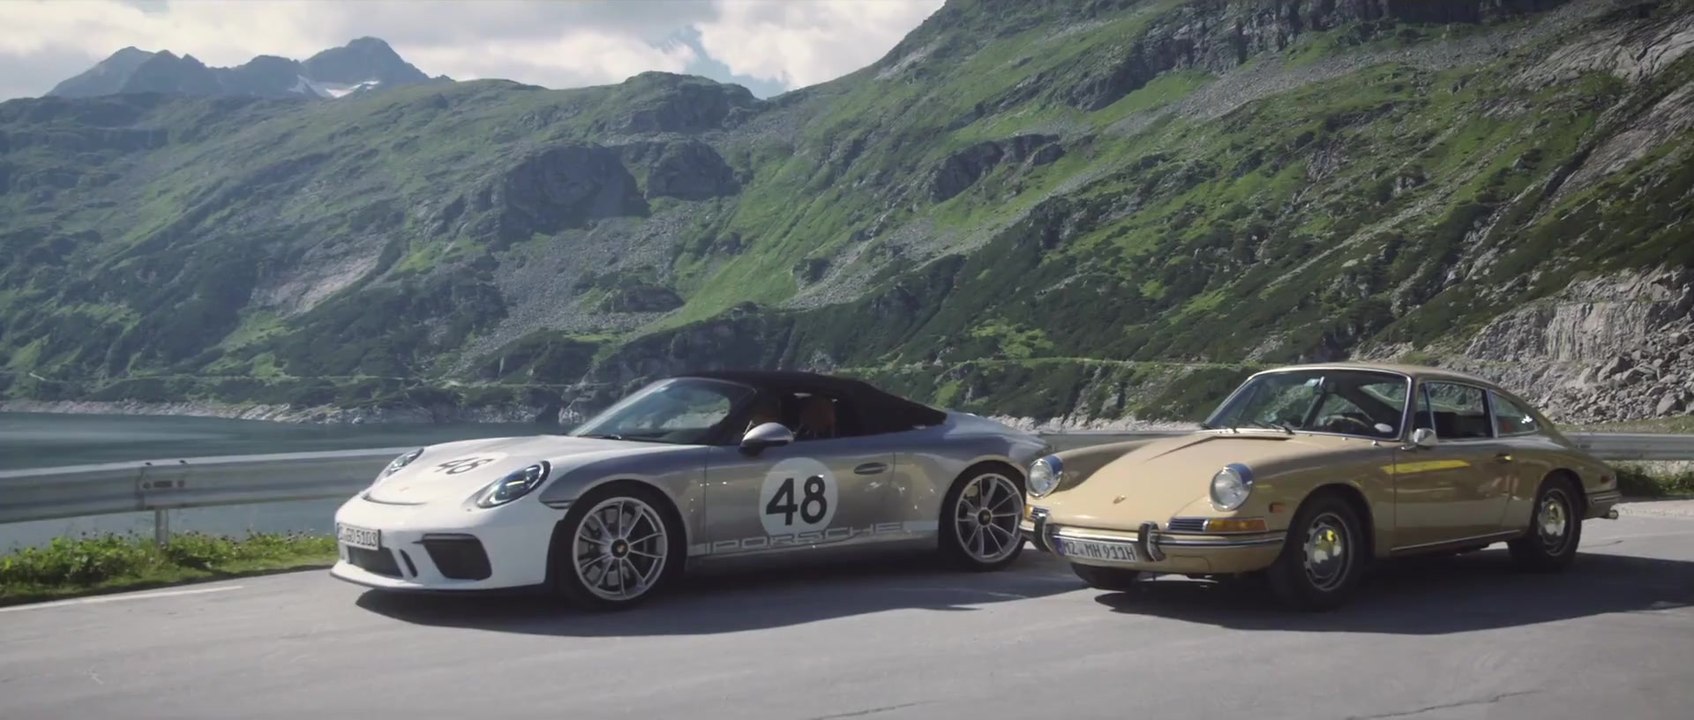 Porsche - Seelensuche im 911 Speedster